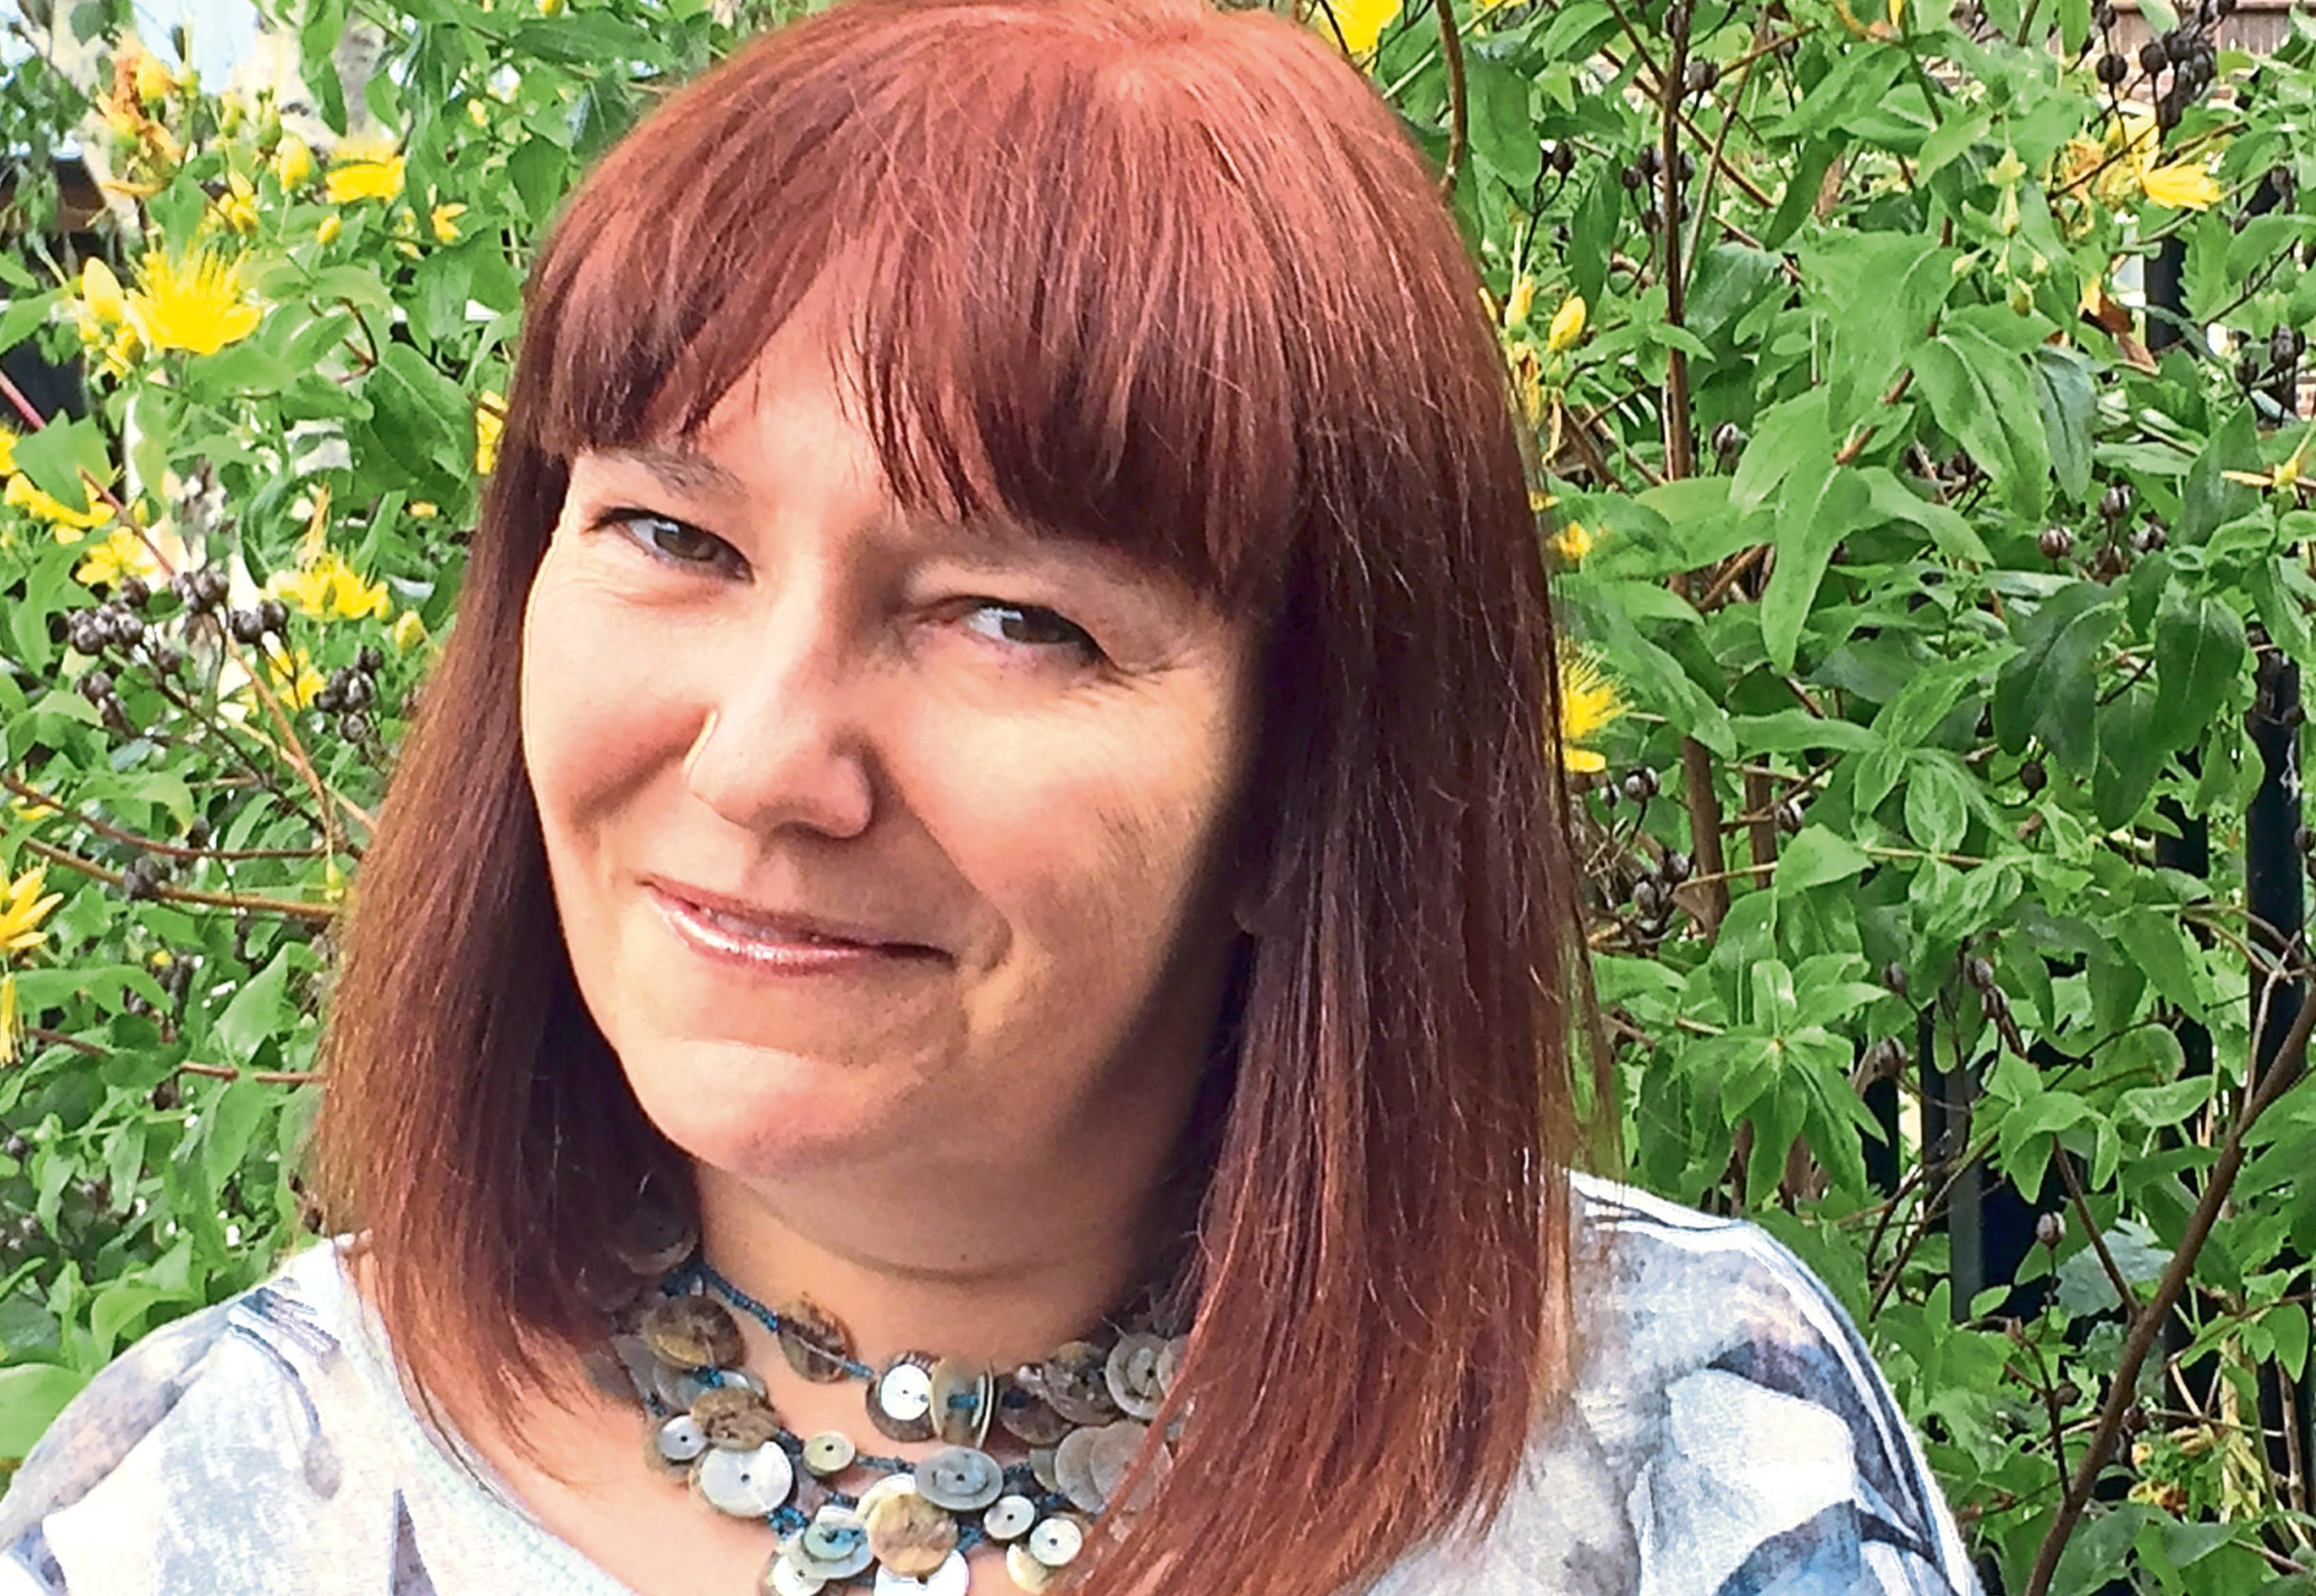 Author Hannah Robinson